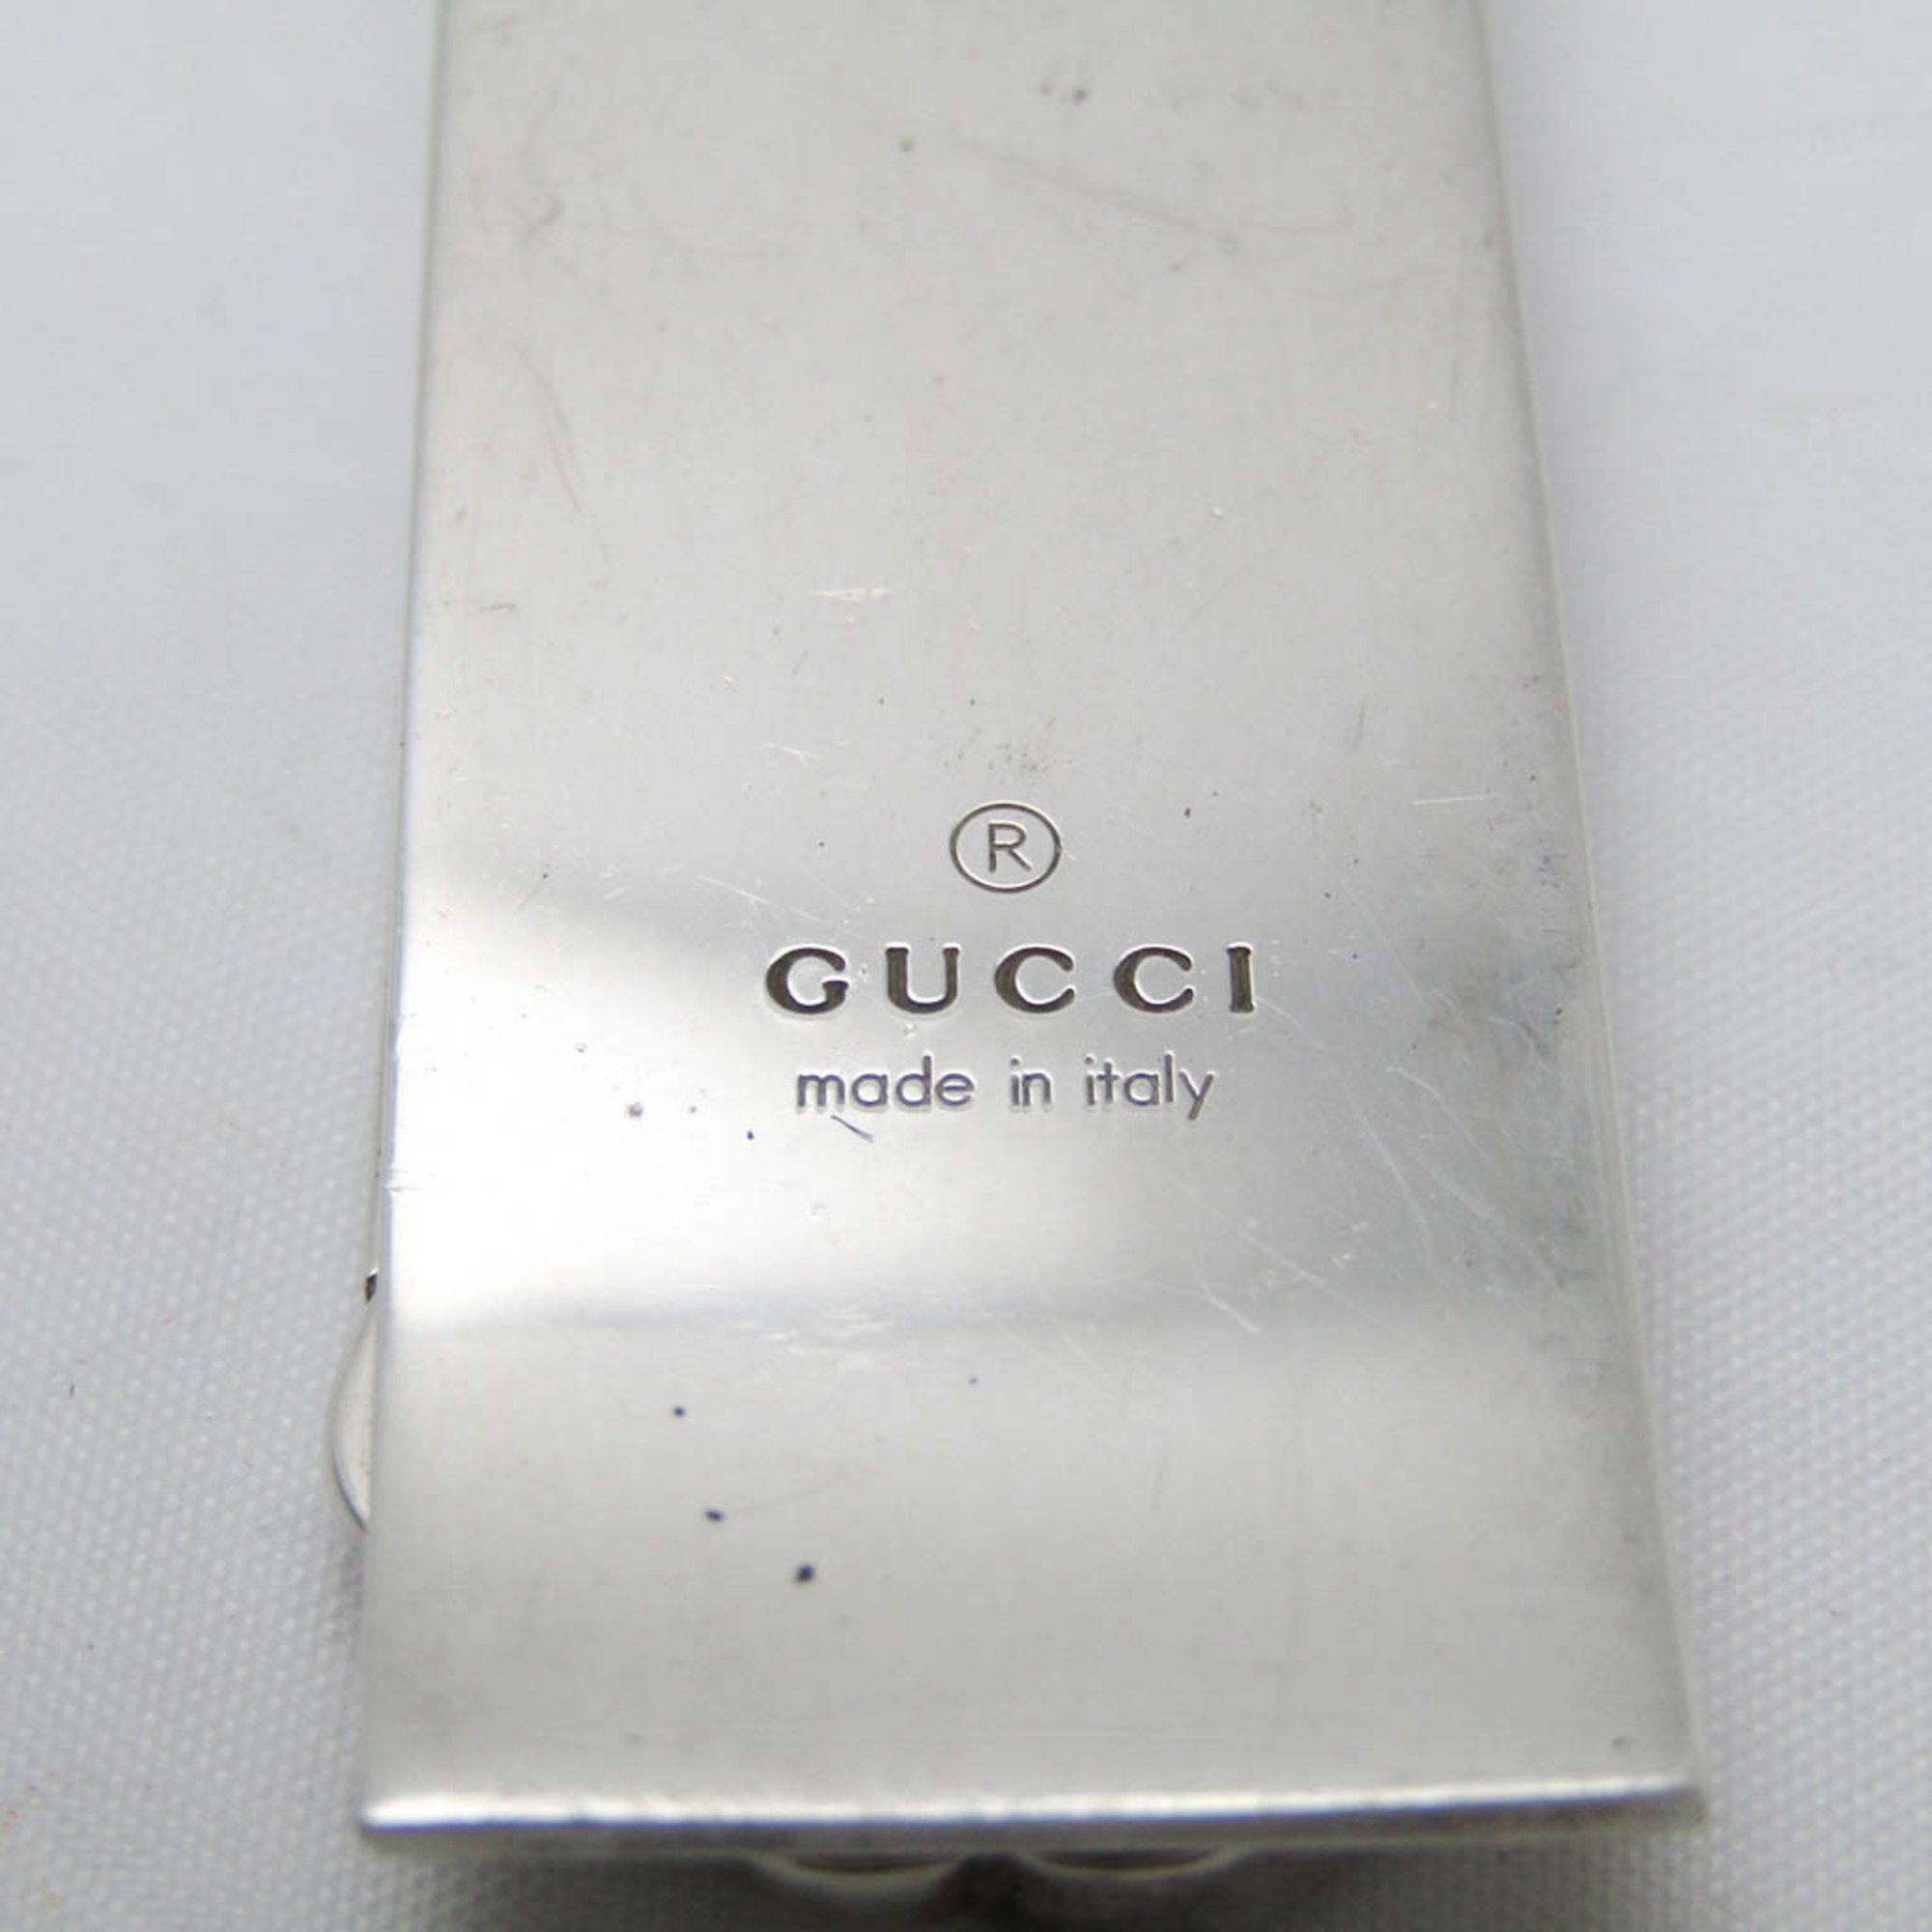 Gucci Double G Men's Silver 925 Money Clip Silver